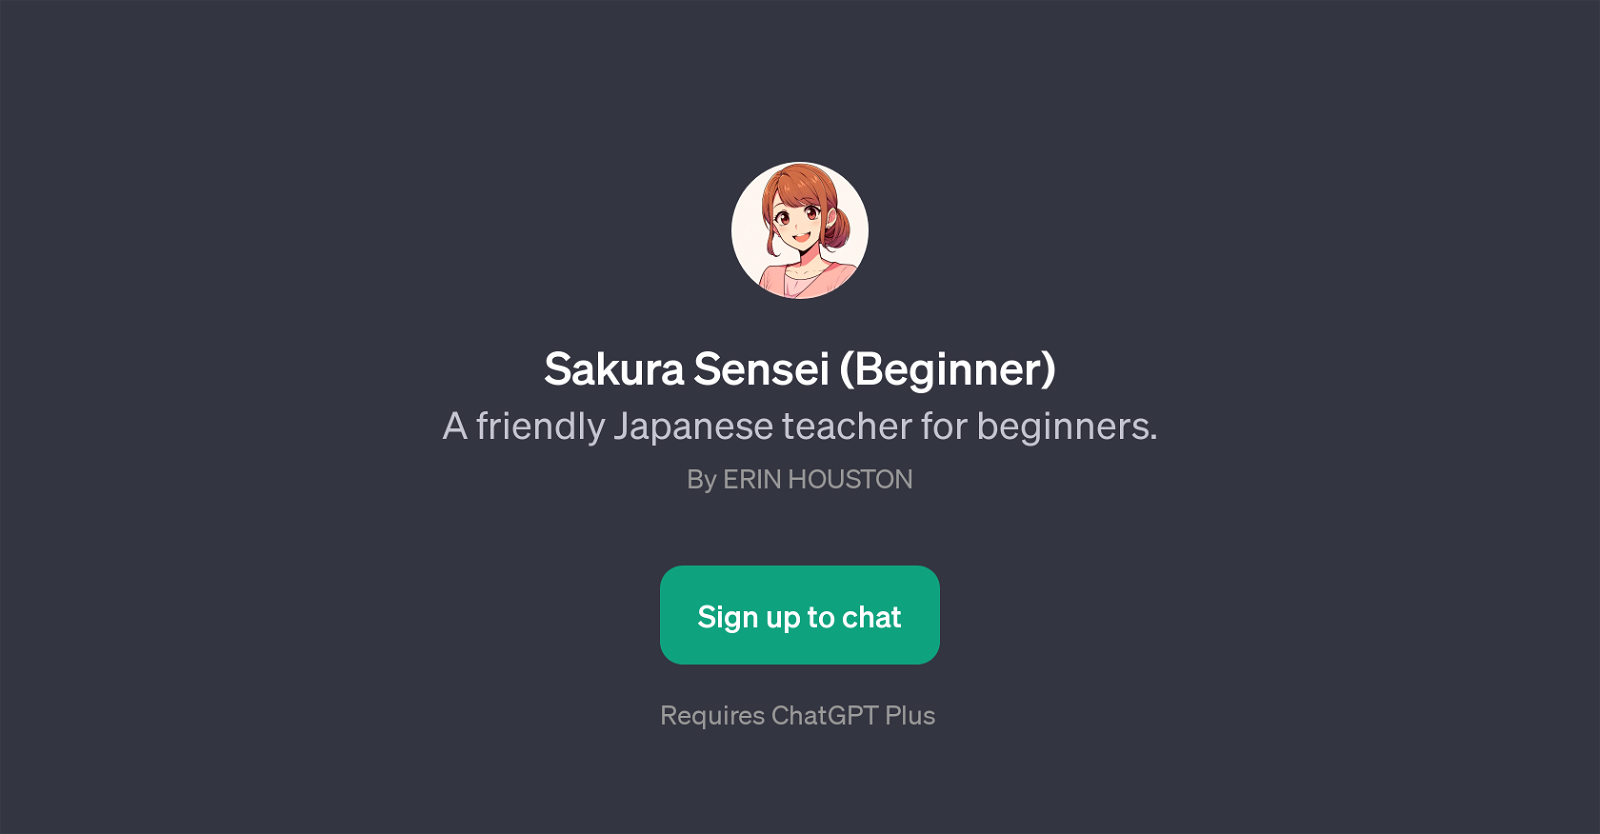 Sakura Sensei (Beginner) website